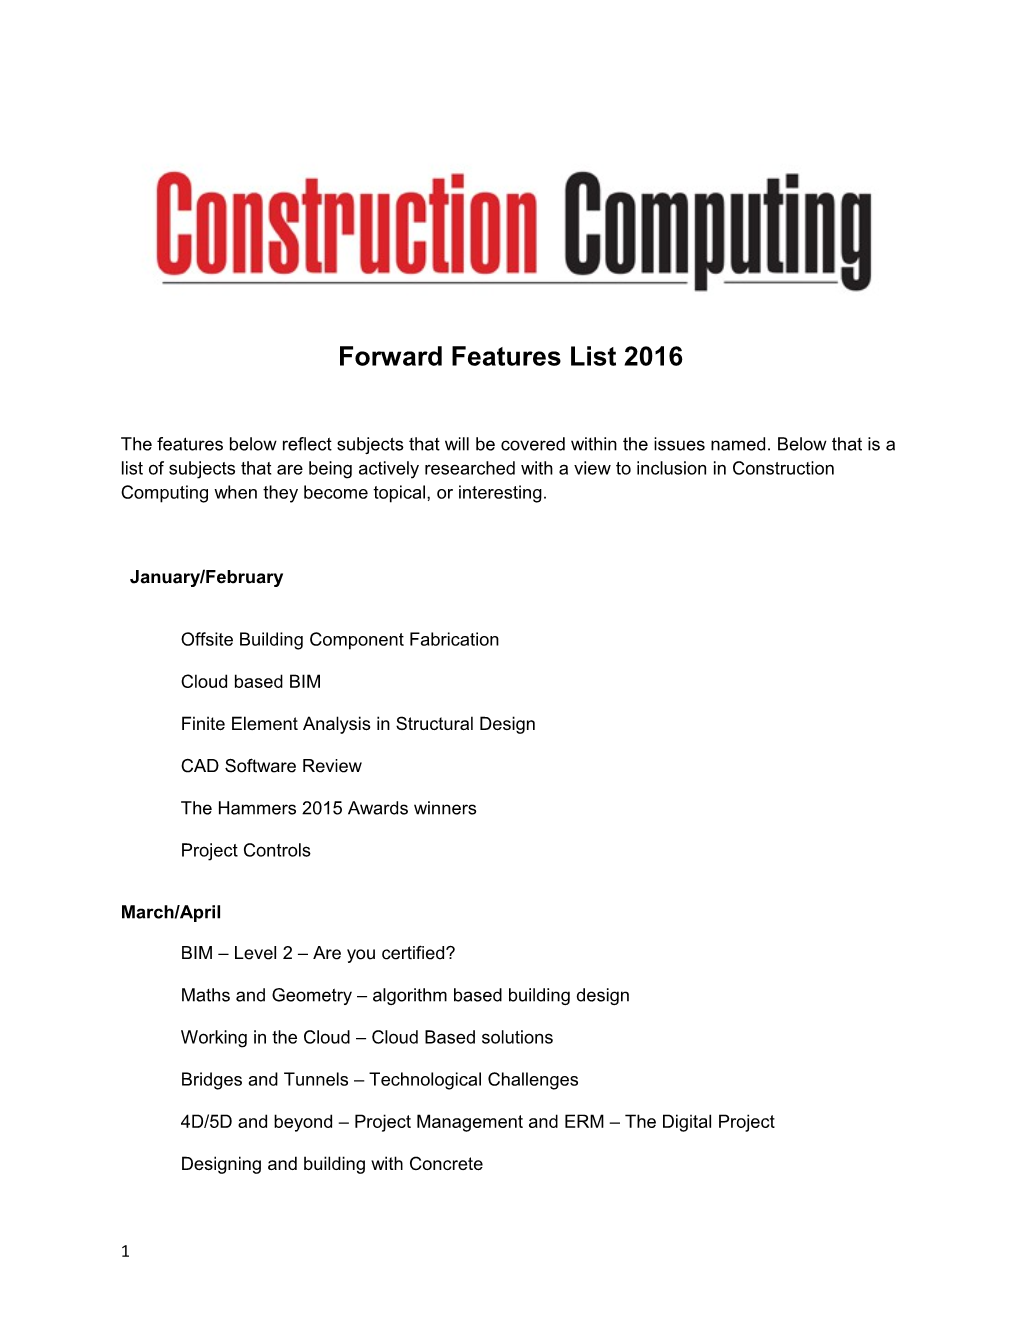 Forward Features List 2016